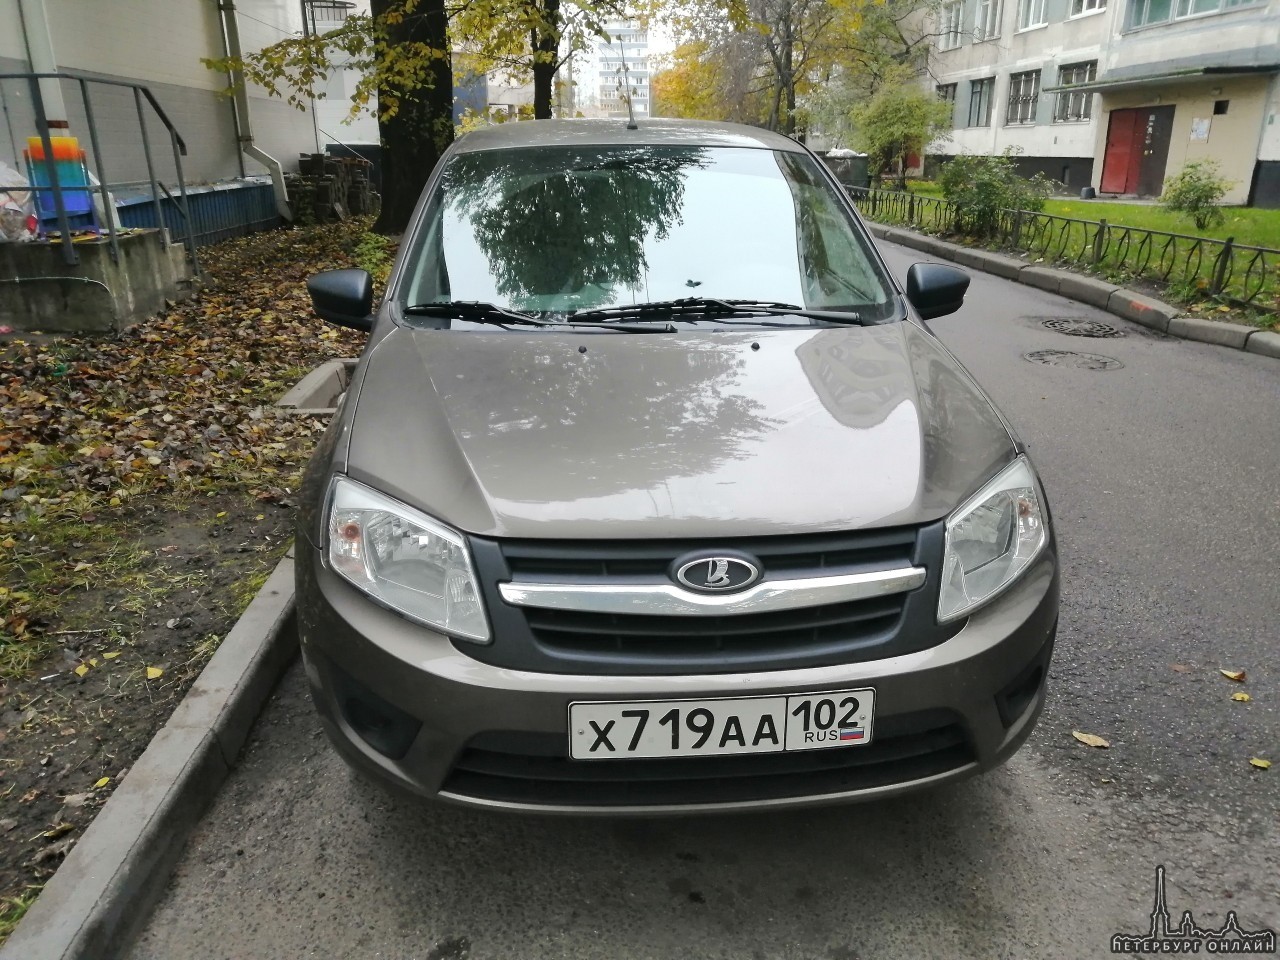 В ночь с 30 на 31 октября с улицы Димитрова 18 к1 был угнан автомобиль Lada Granta 219010 , золотист...